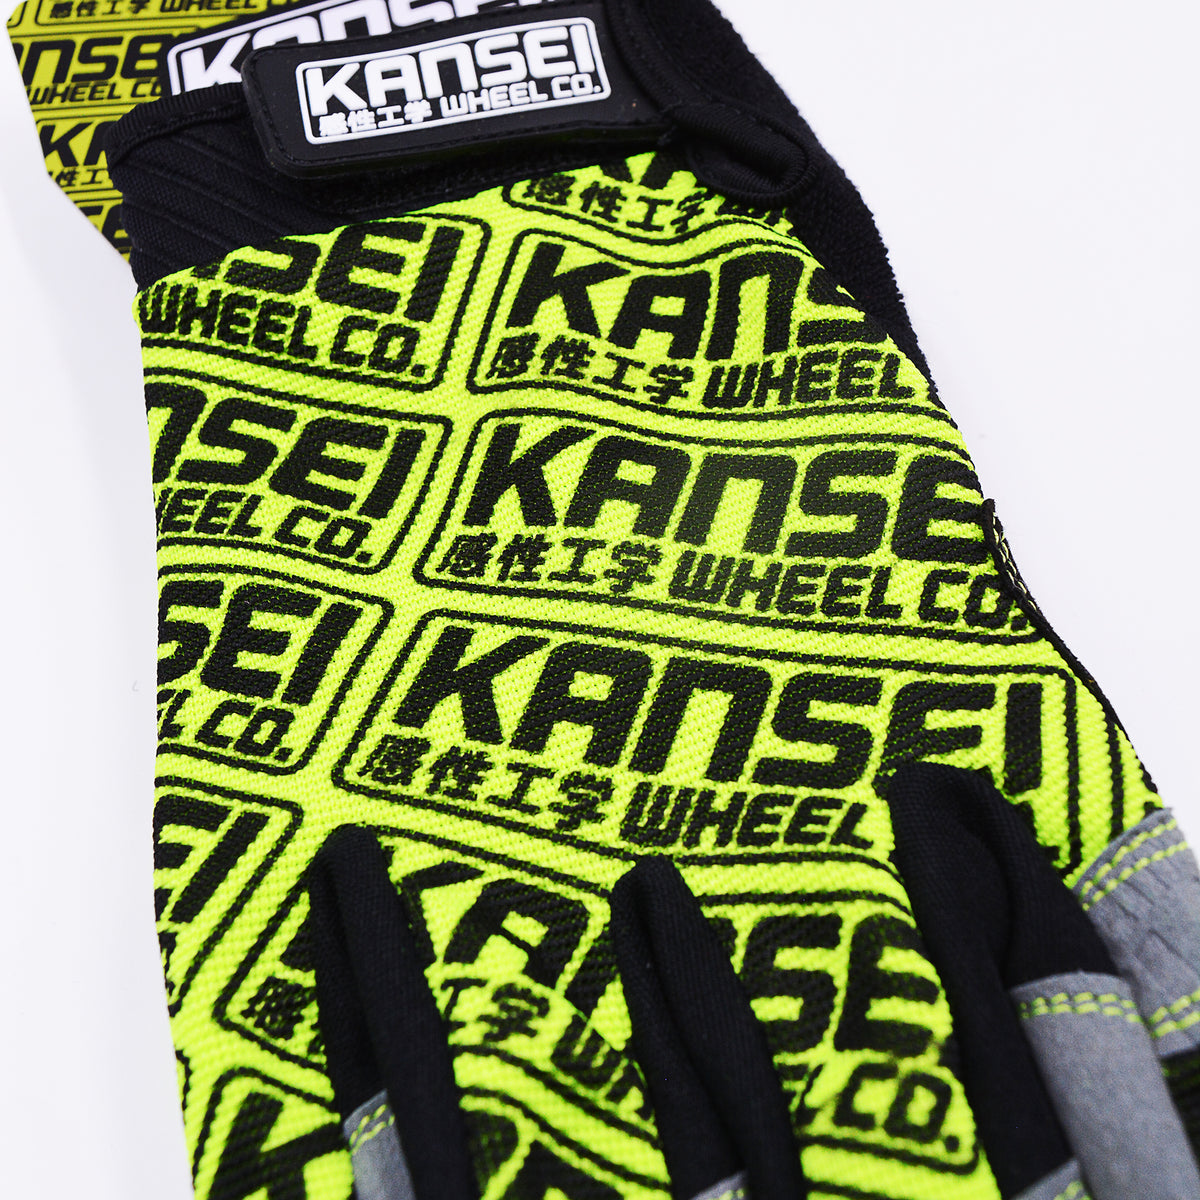 Kansei Touch Screen Mechanic Gloves (Green)